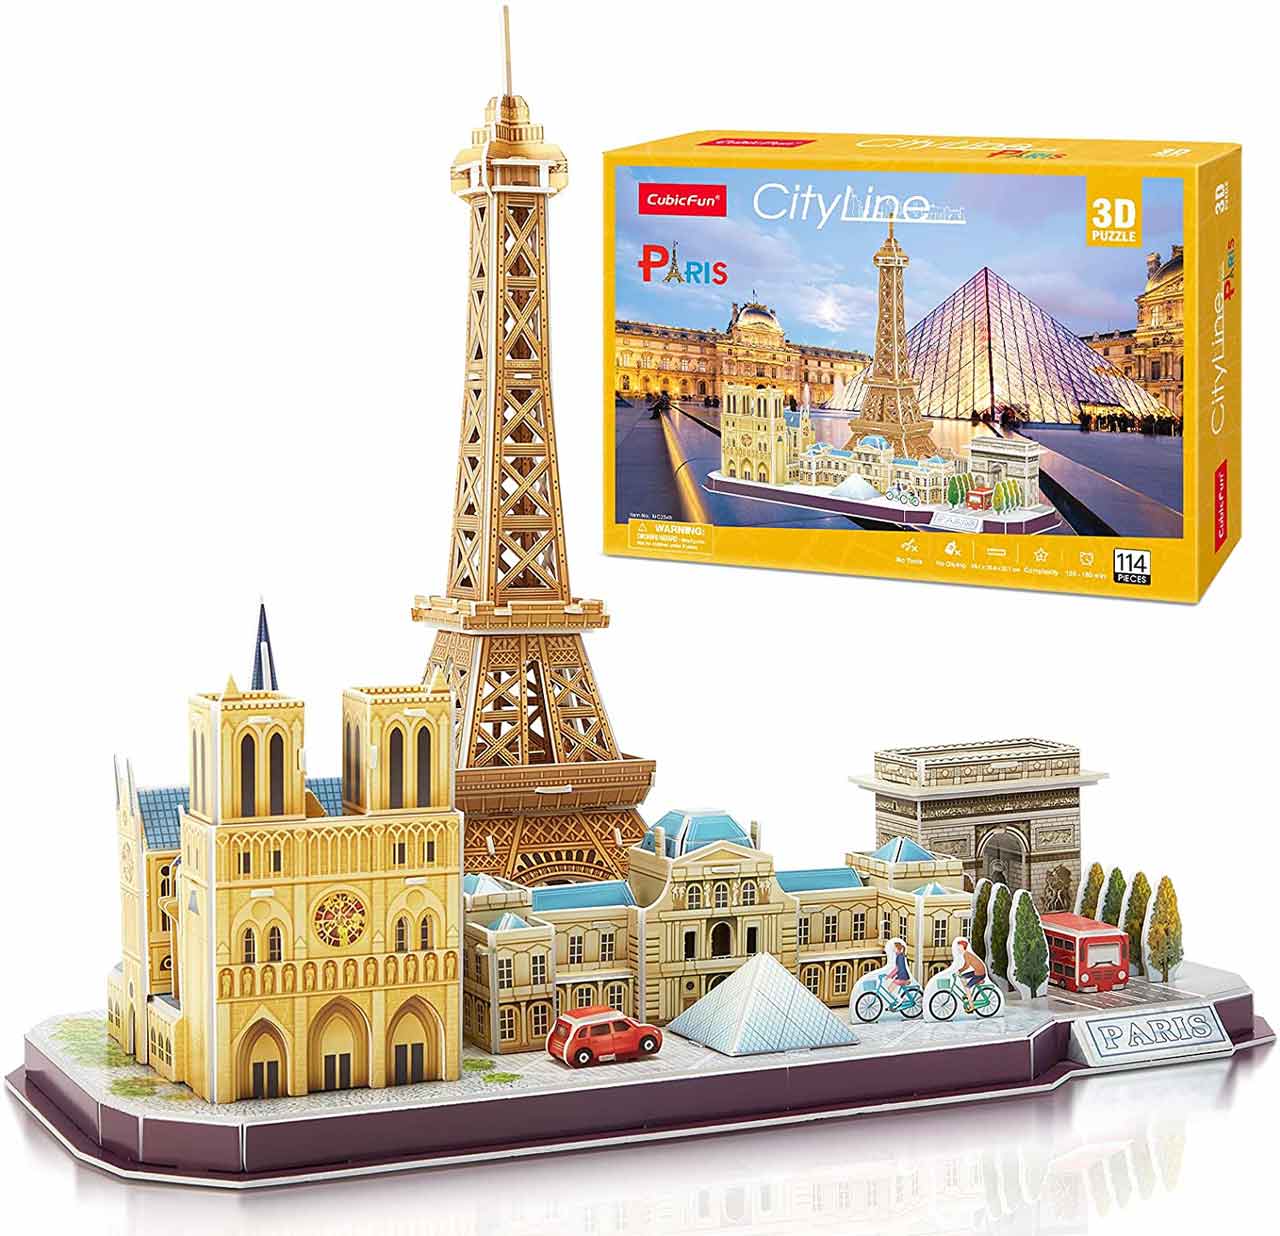 Paris 3D Puzzle Cityline CubicFun